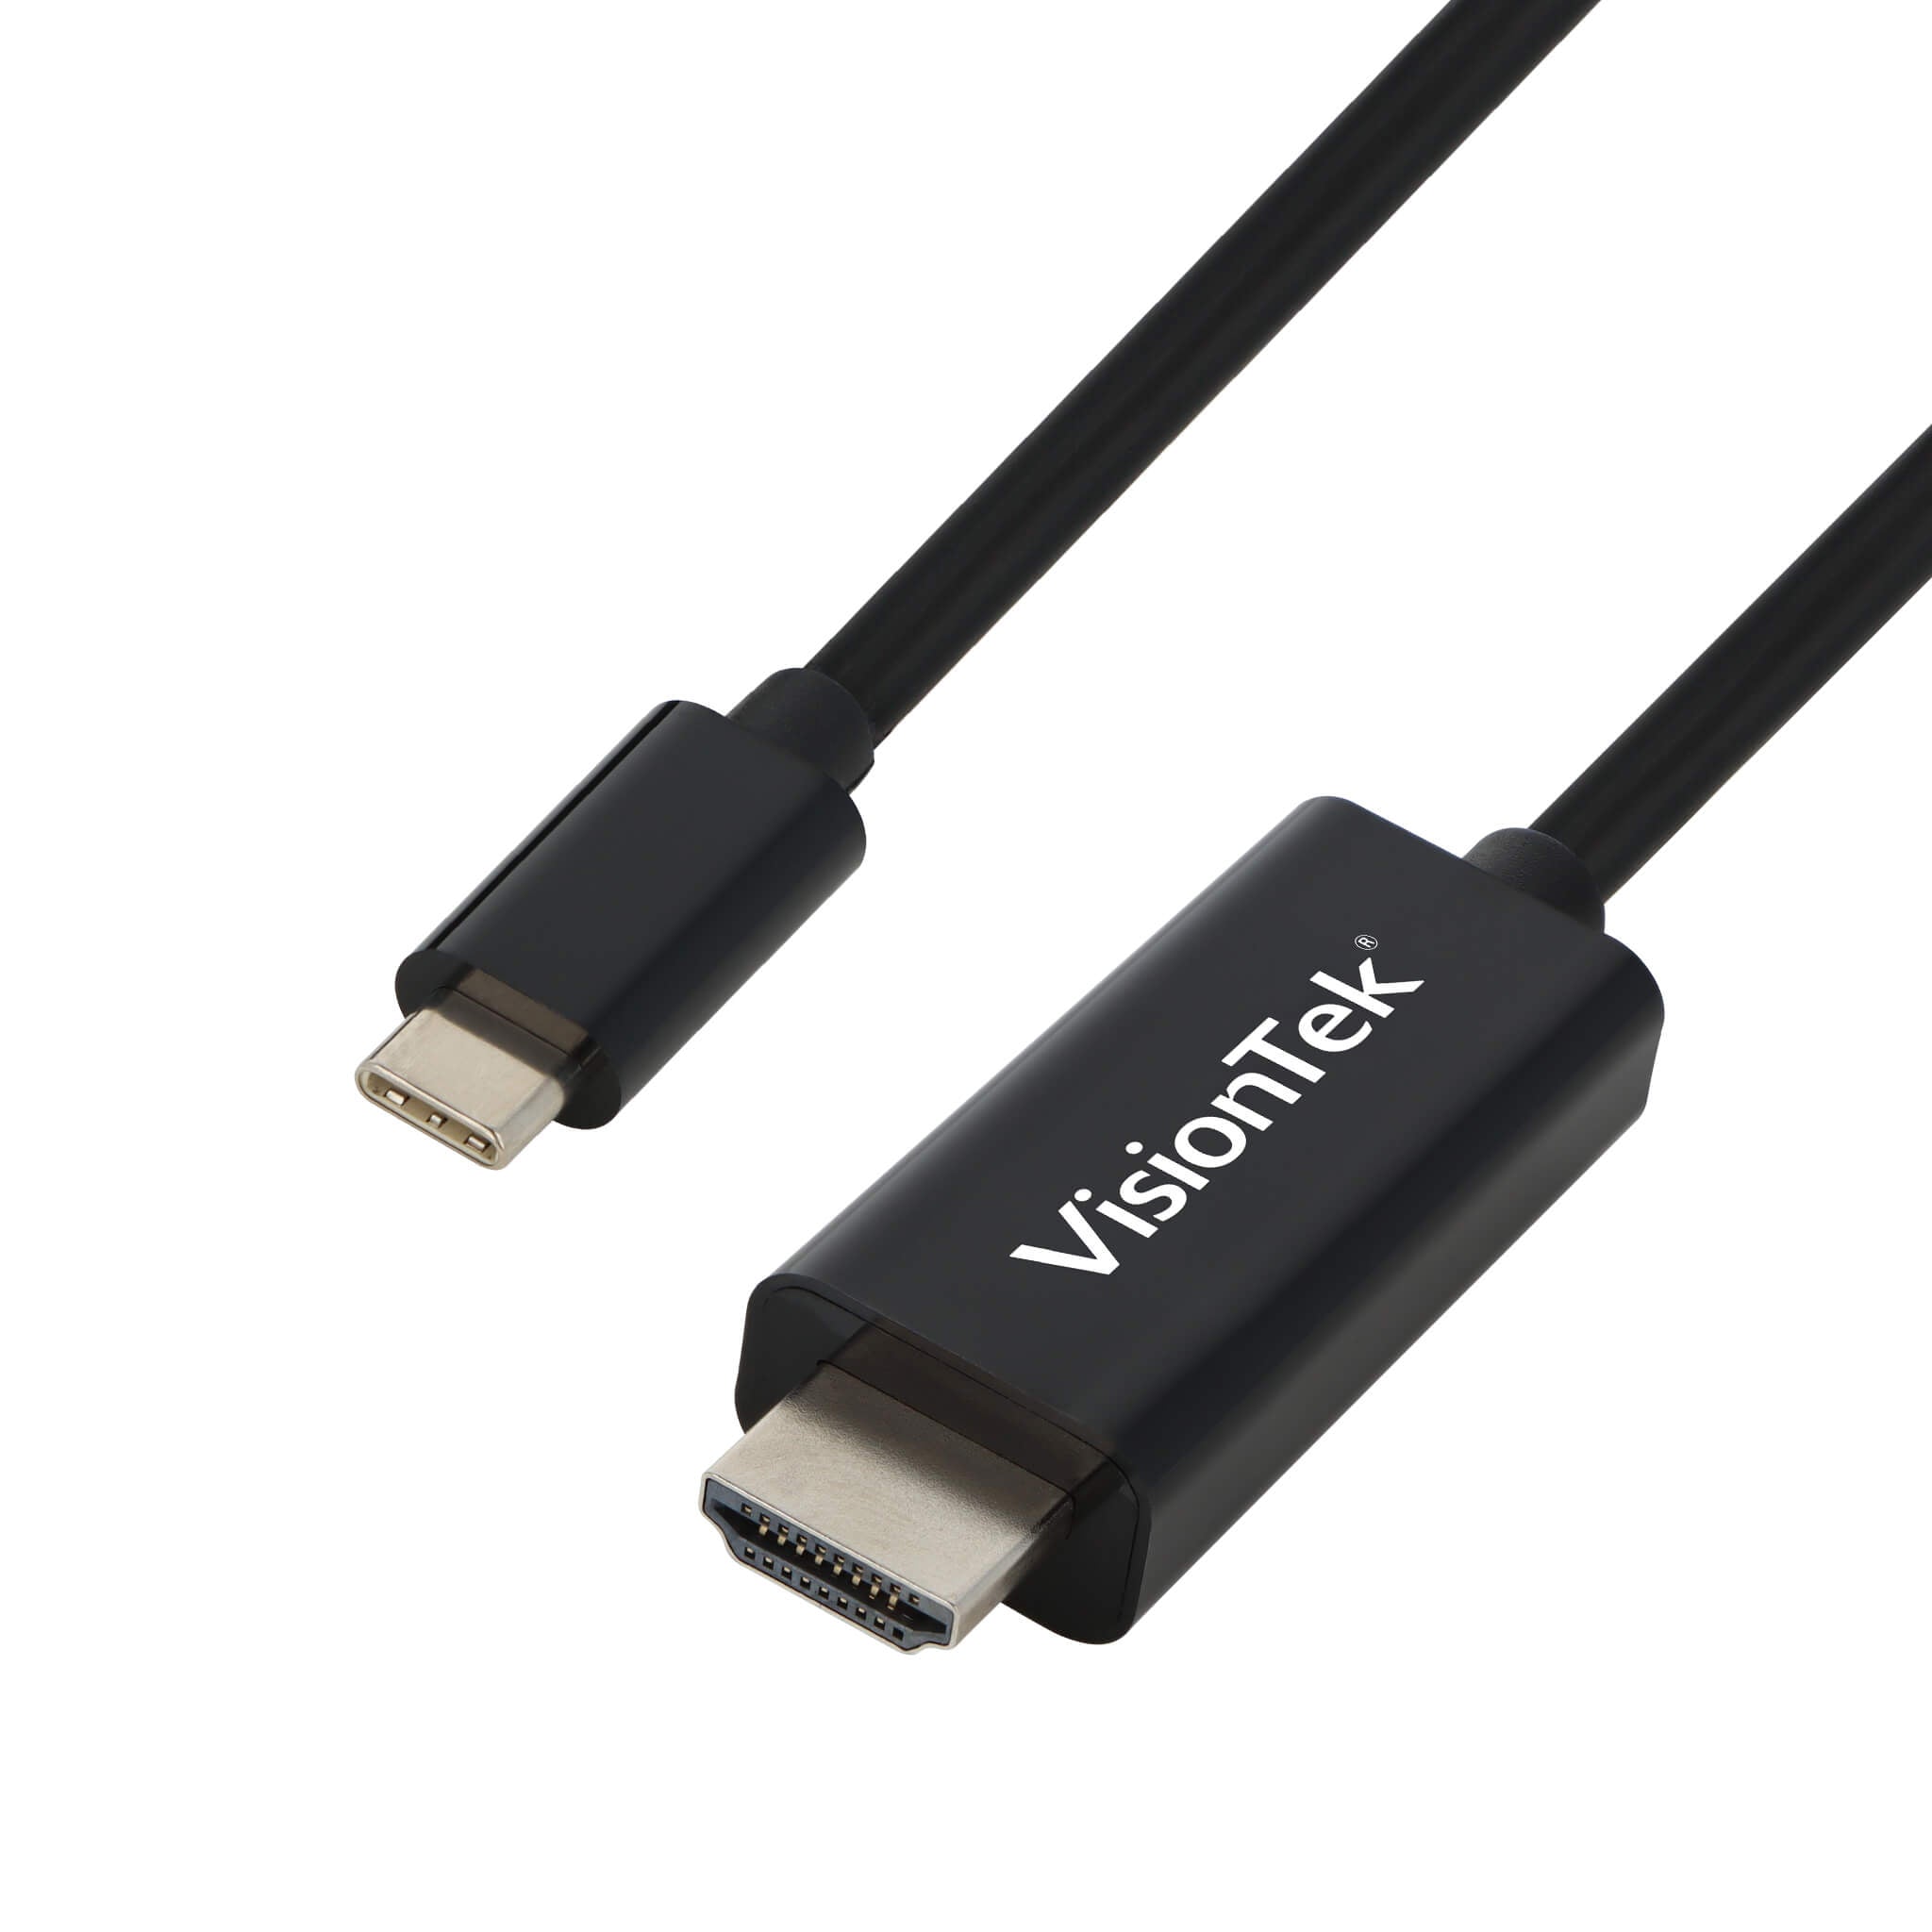 maagd Tanzania omroeper USB C/Thunderbolt 3 to HDMI 2.0 Active 2 Meter Cable (M/M) – VisionTek.com